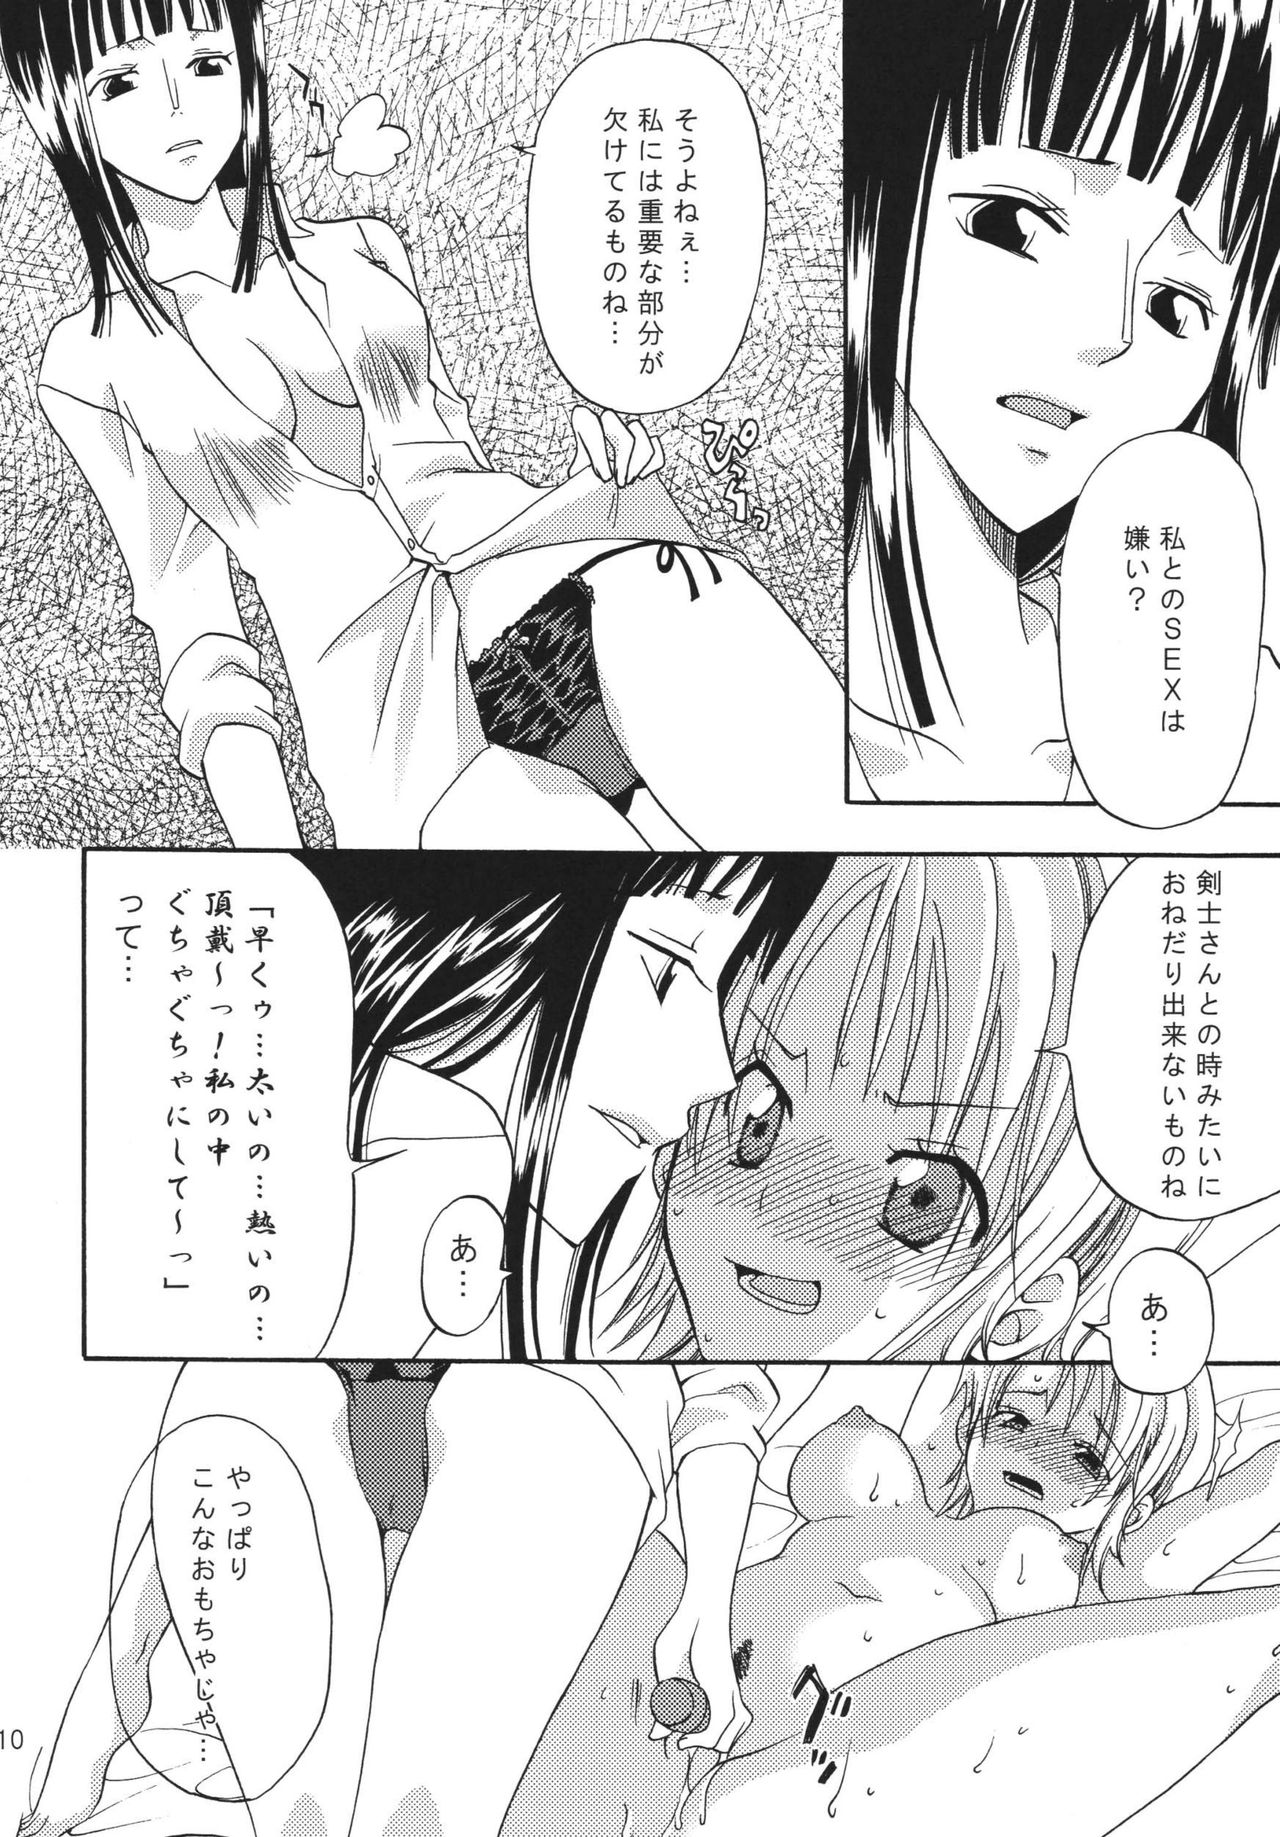 [Kurione-sha (YU-RI)] Oshiete! Nico-san (One Piece) [Digital] [くりおね館 (YU-RI)] おしえて!ニコさん (ワンピース) [DL版]